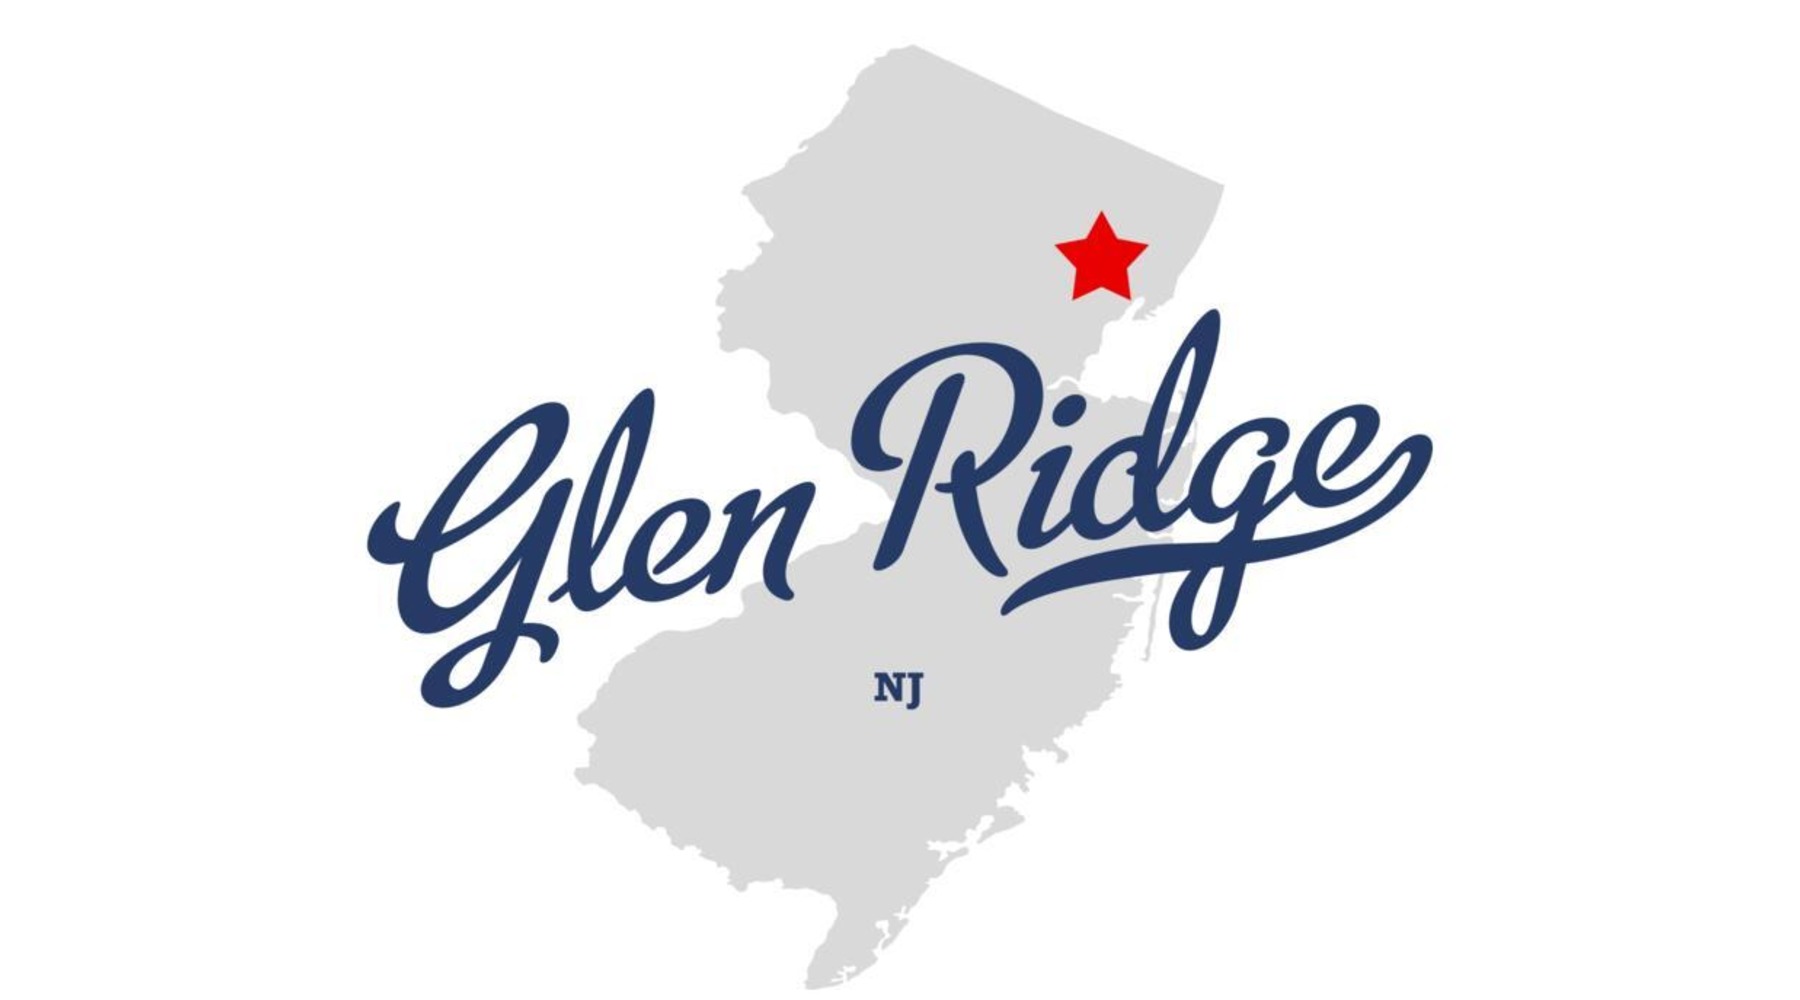 Glen Ridge, 07028